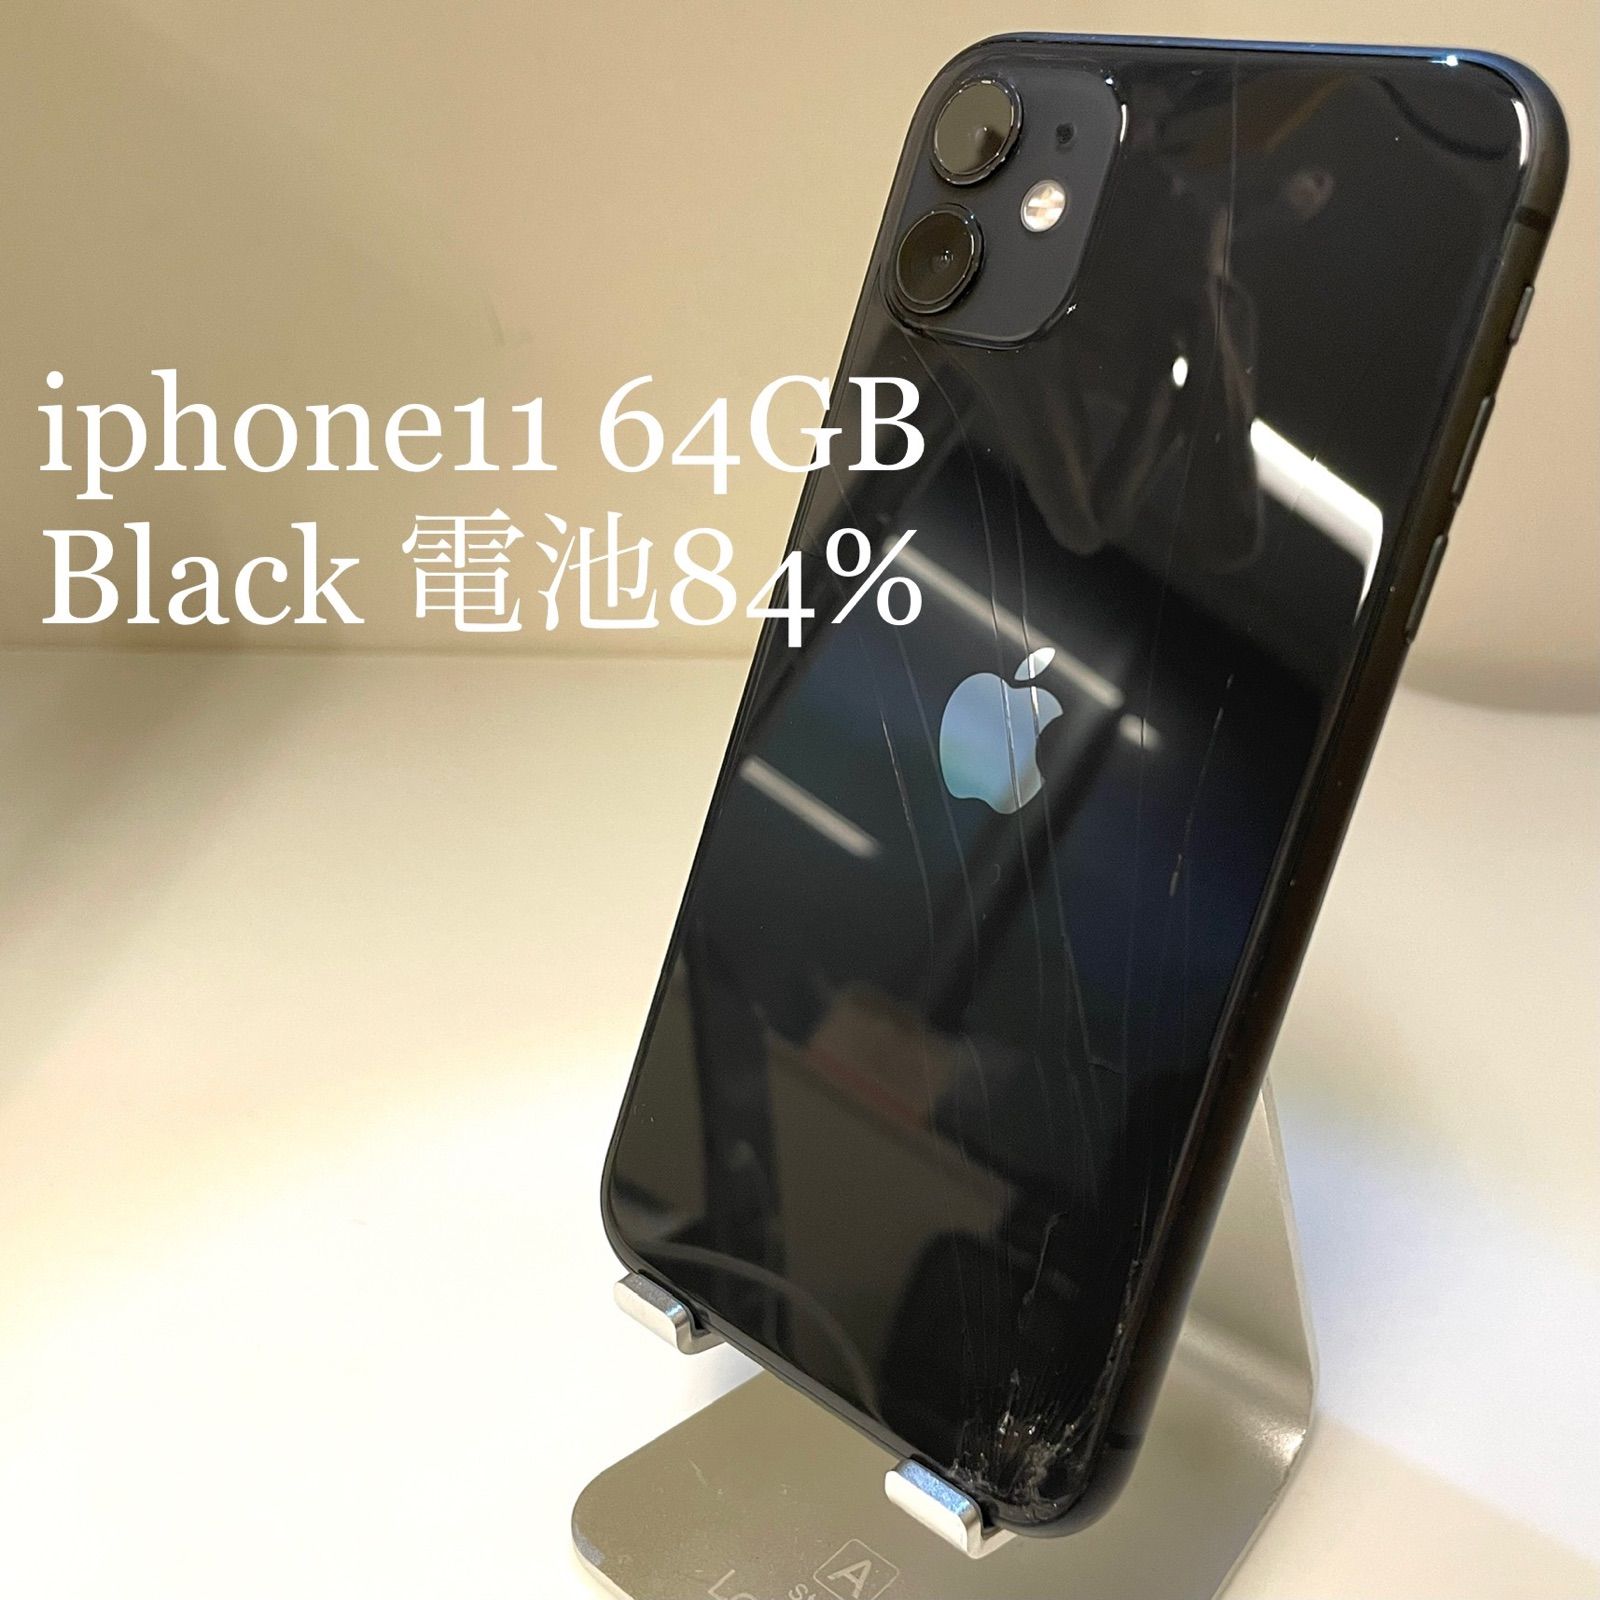 iPhone11 64GB】ブラック SIMフリー バッテリー残量84% - メルカリ